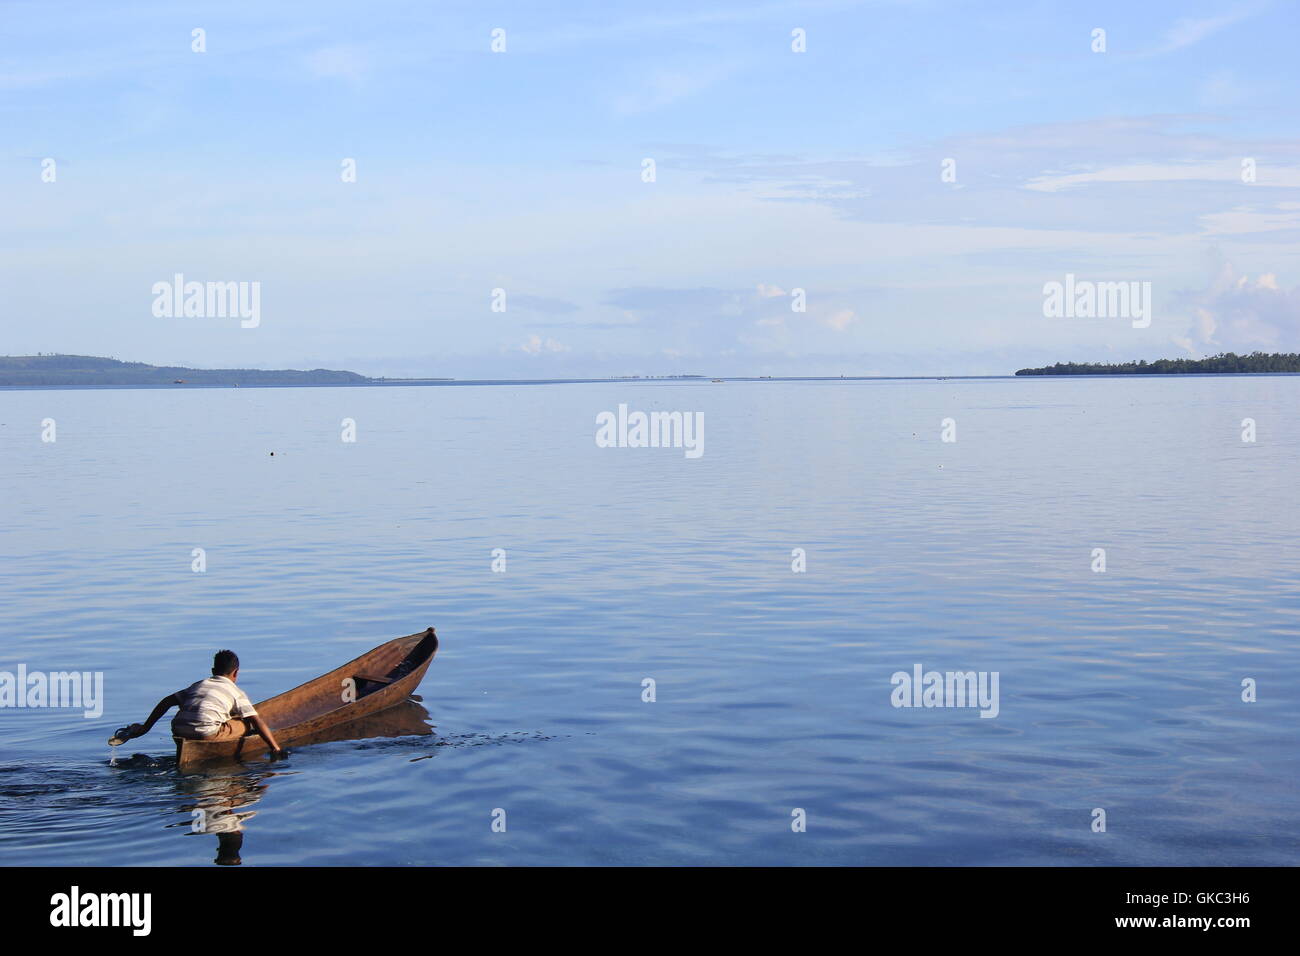 Ein kleiner Junge rudert sein kleines Boot mit seinen kleinen Händen auf einem ruhigen weiten offenen Meer. Das Foto wurde in Seram Island, Maluku Islands, Indonesien aufgenommen. Stockfoto